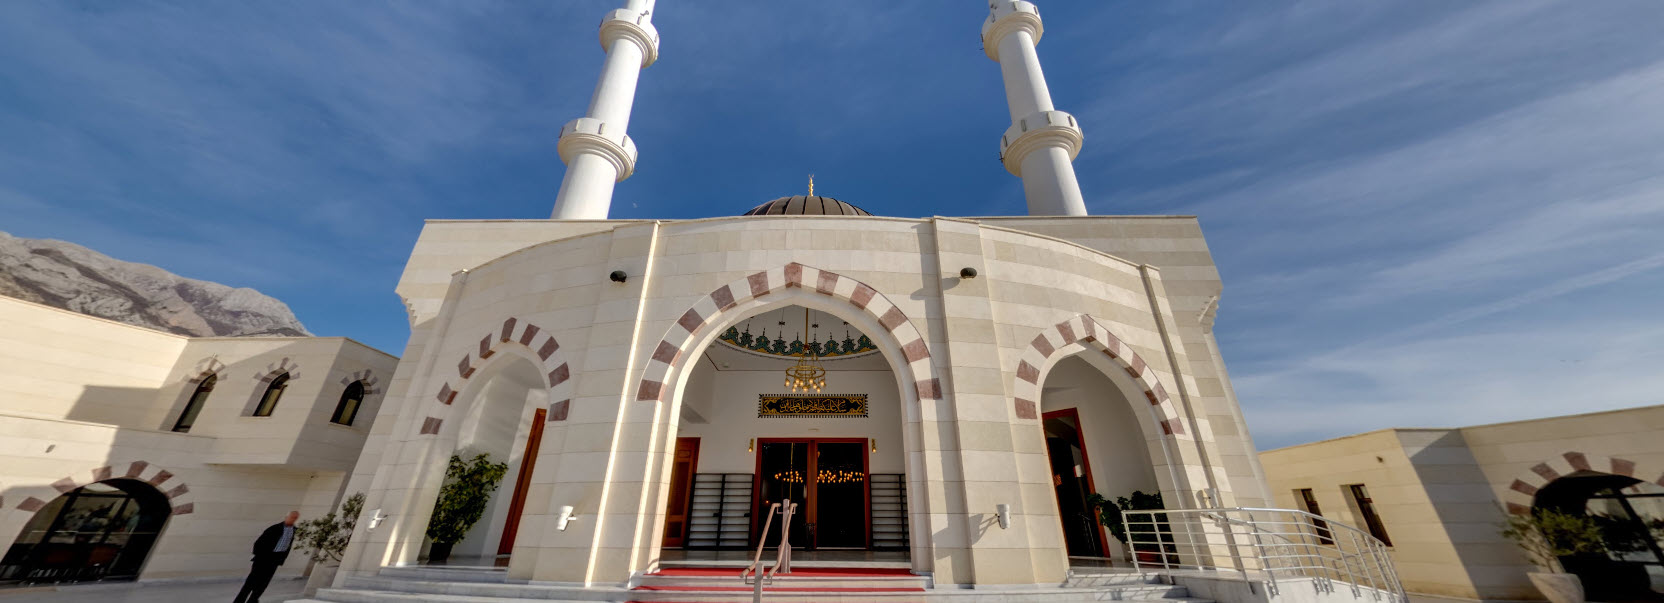 360 islamski kulturni centar bar